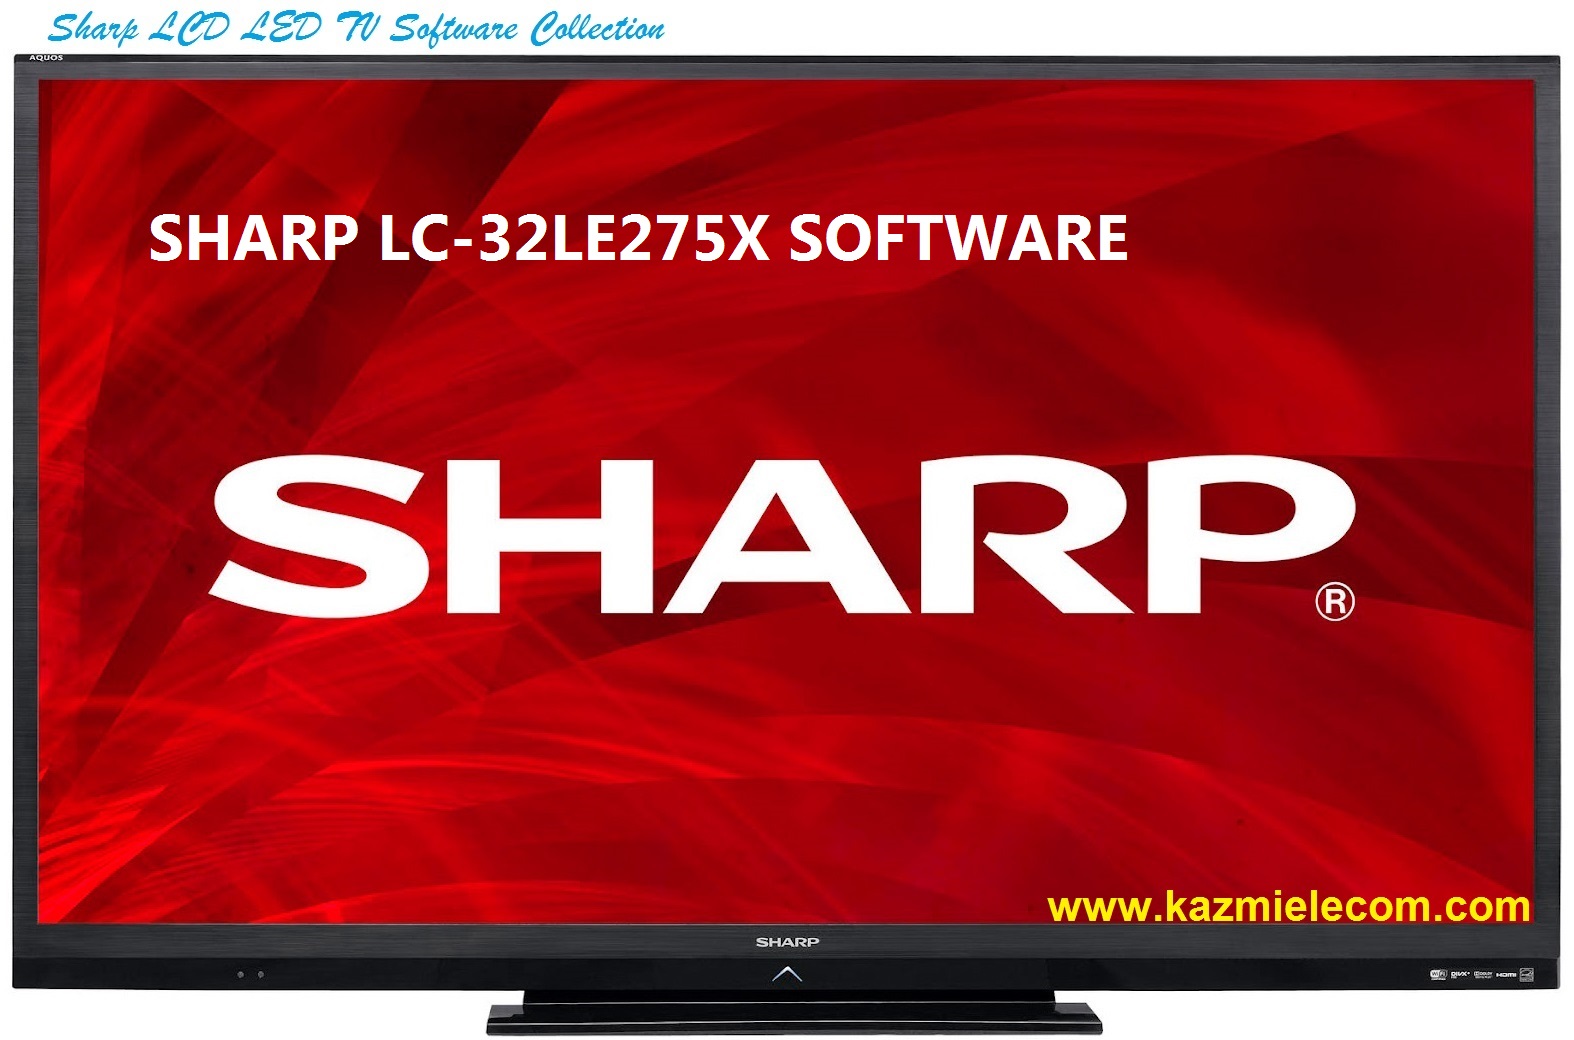 Sharp Lc-32Le275X